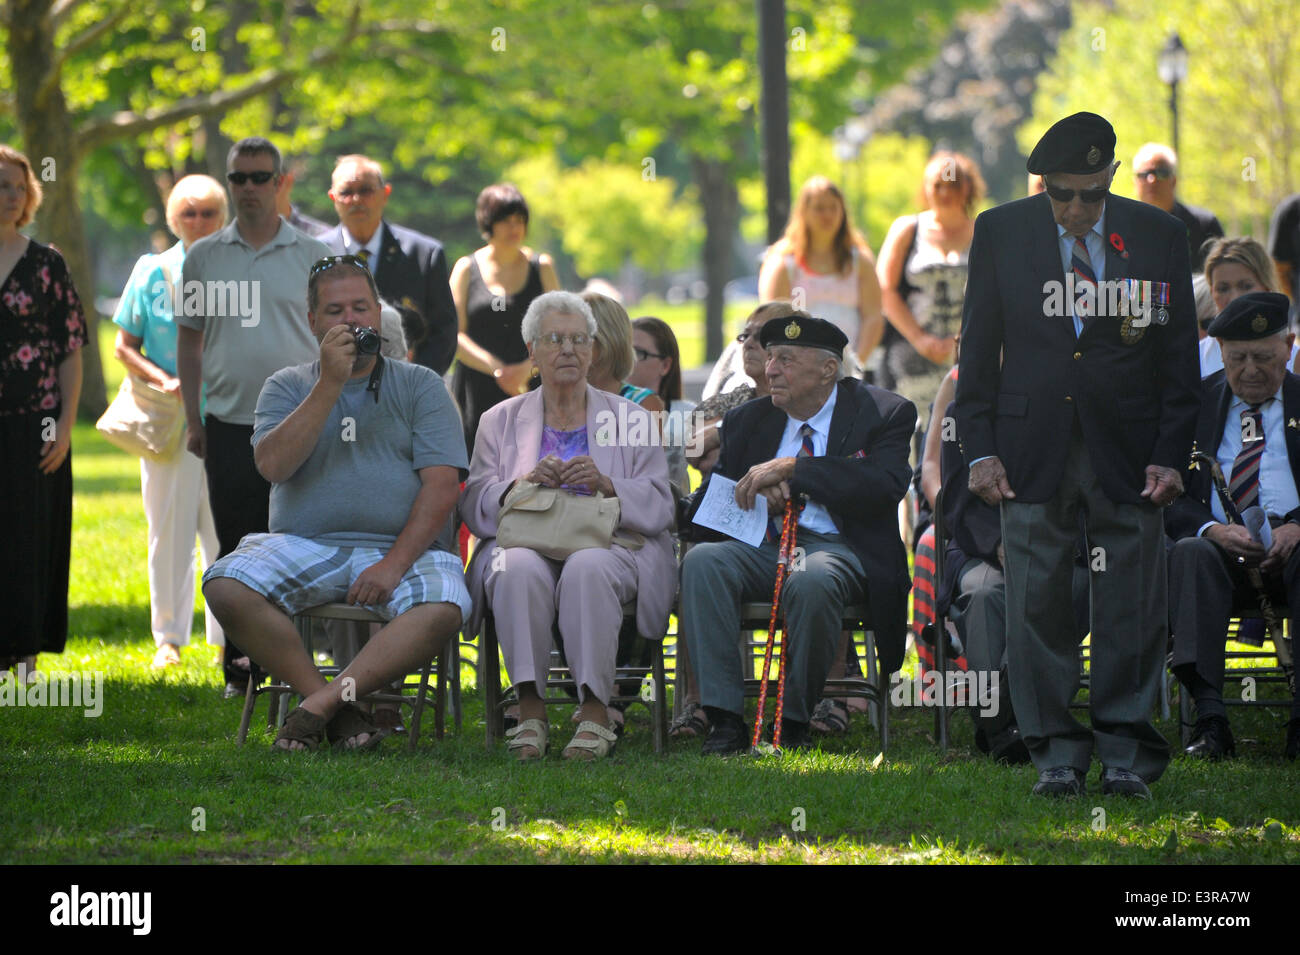 I politici e i membri del pubblico, veterani e servendo il personale militare assistere ad una cerimonia in occasione del settantesimo anniversario del D-day. Foto Stock